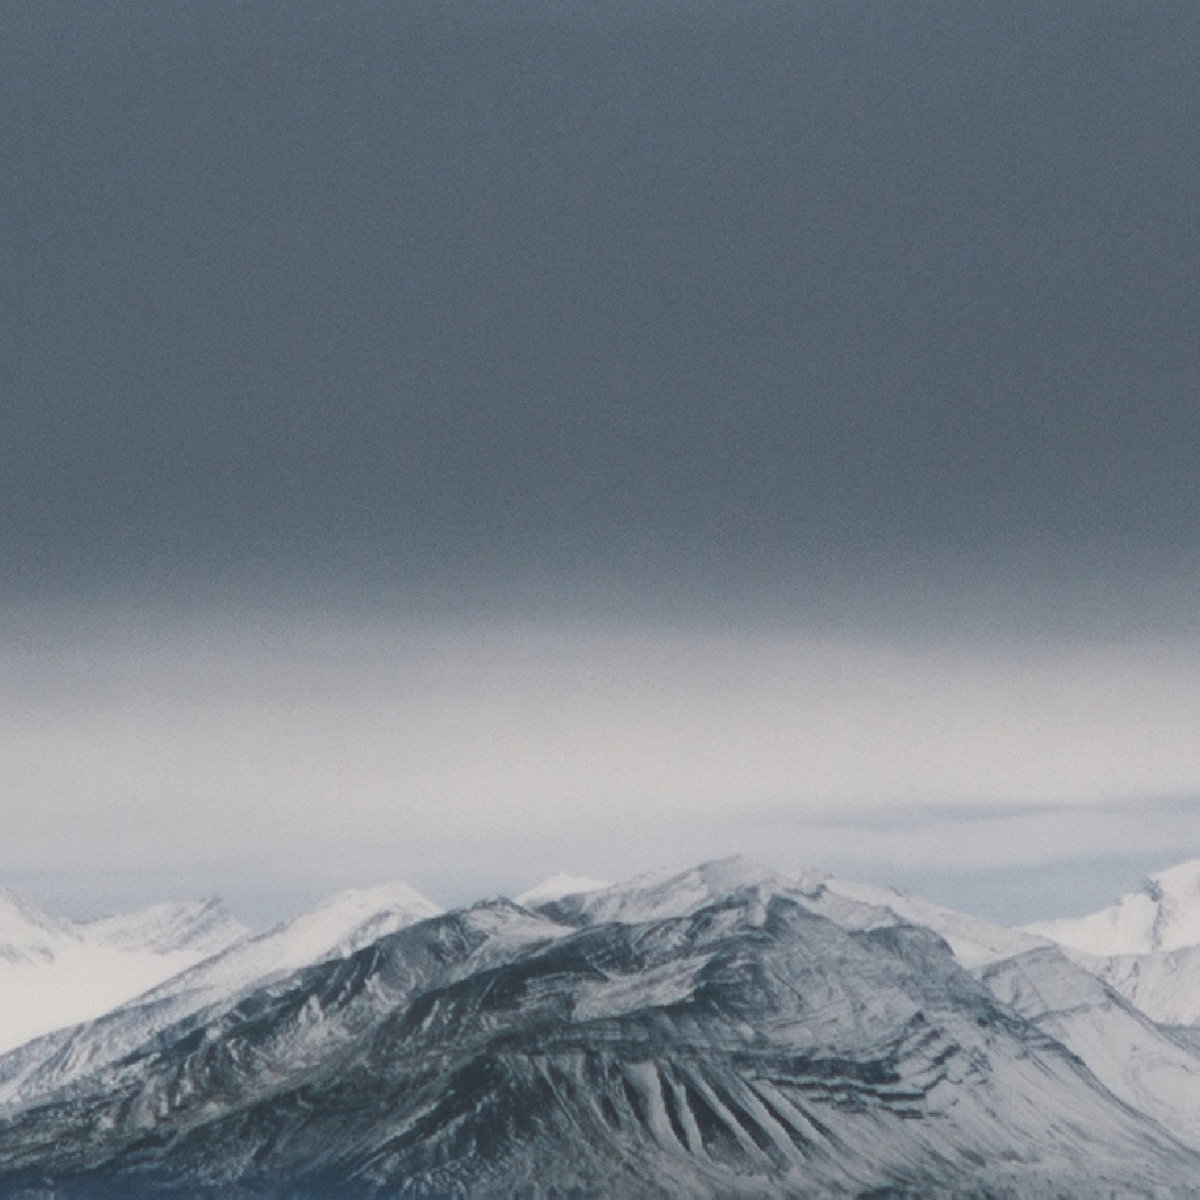 [album cover art] SVLBRD – Svalbard